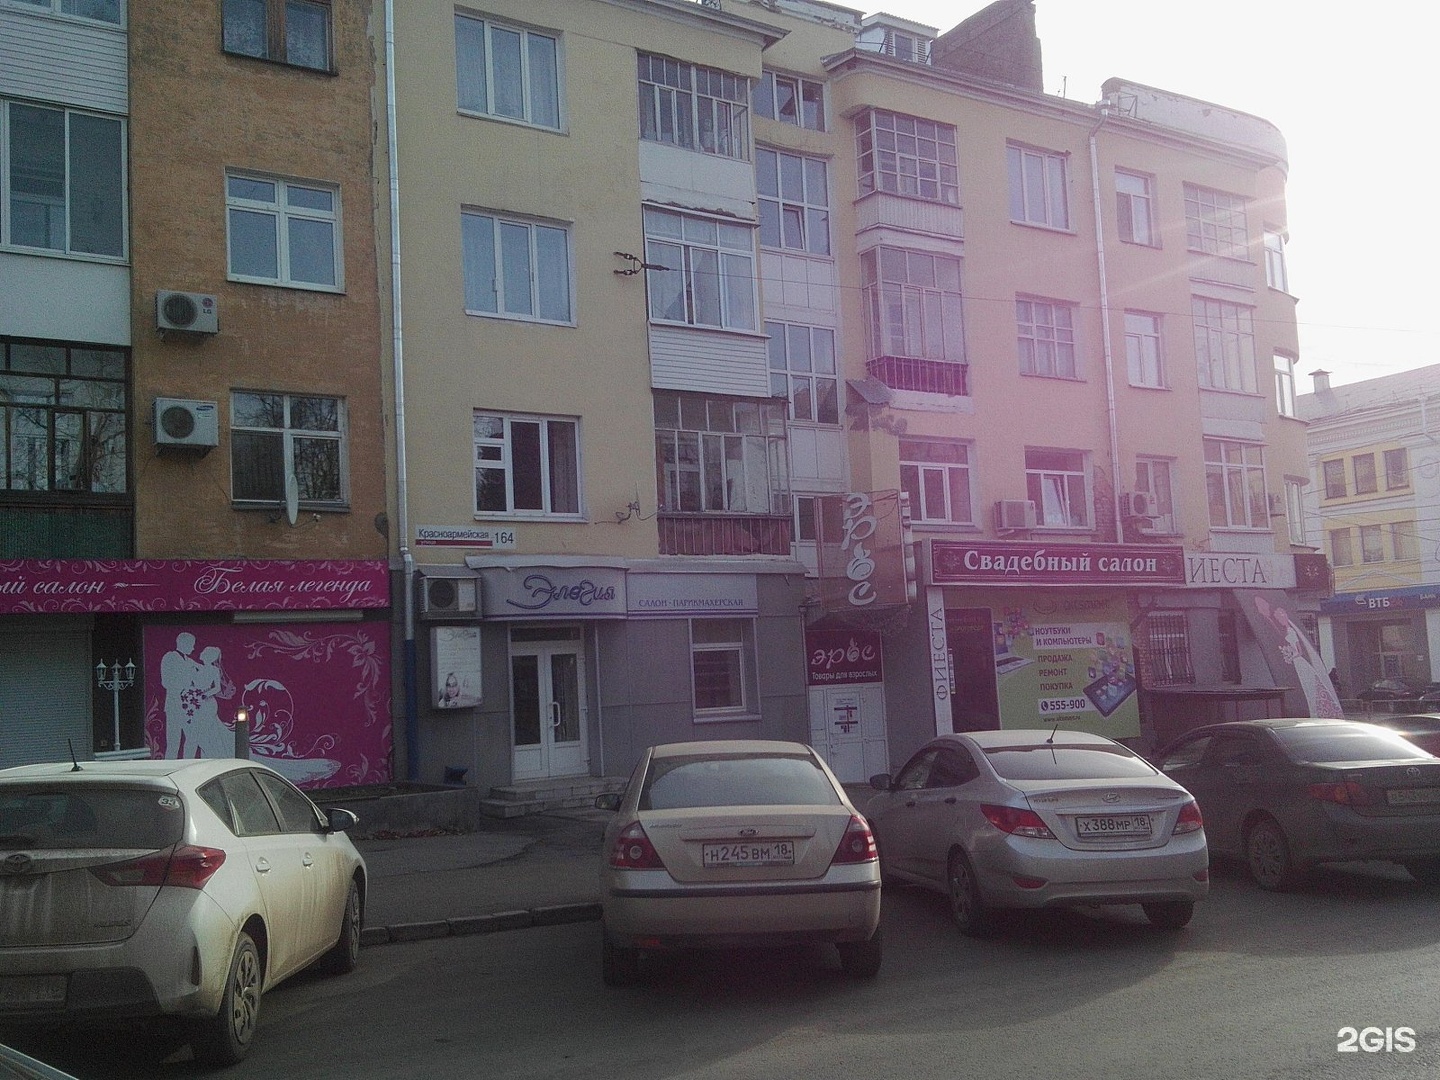 Интимные штучки на Красноармейской улице в Ижевске - адрес, телефон, отзывы